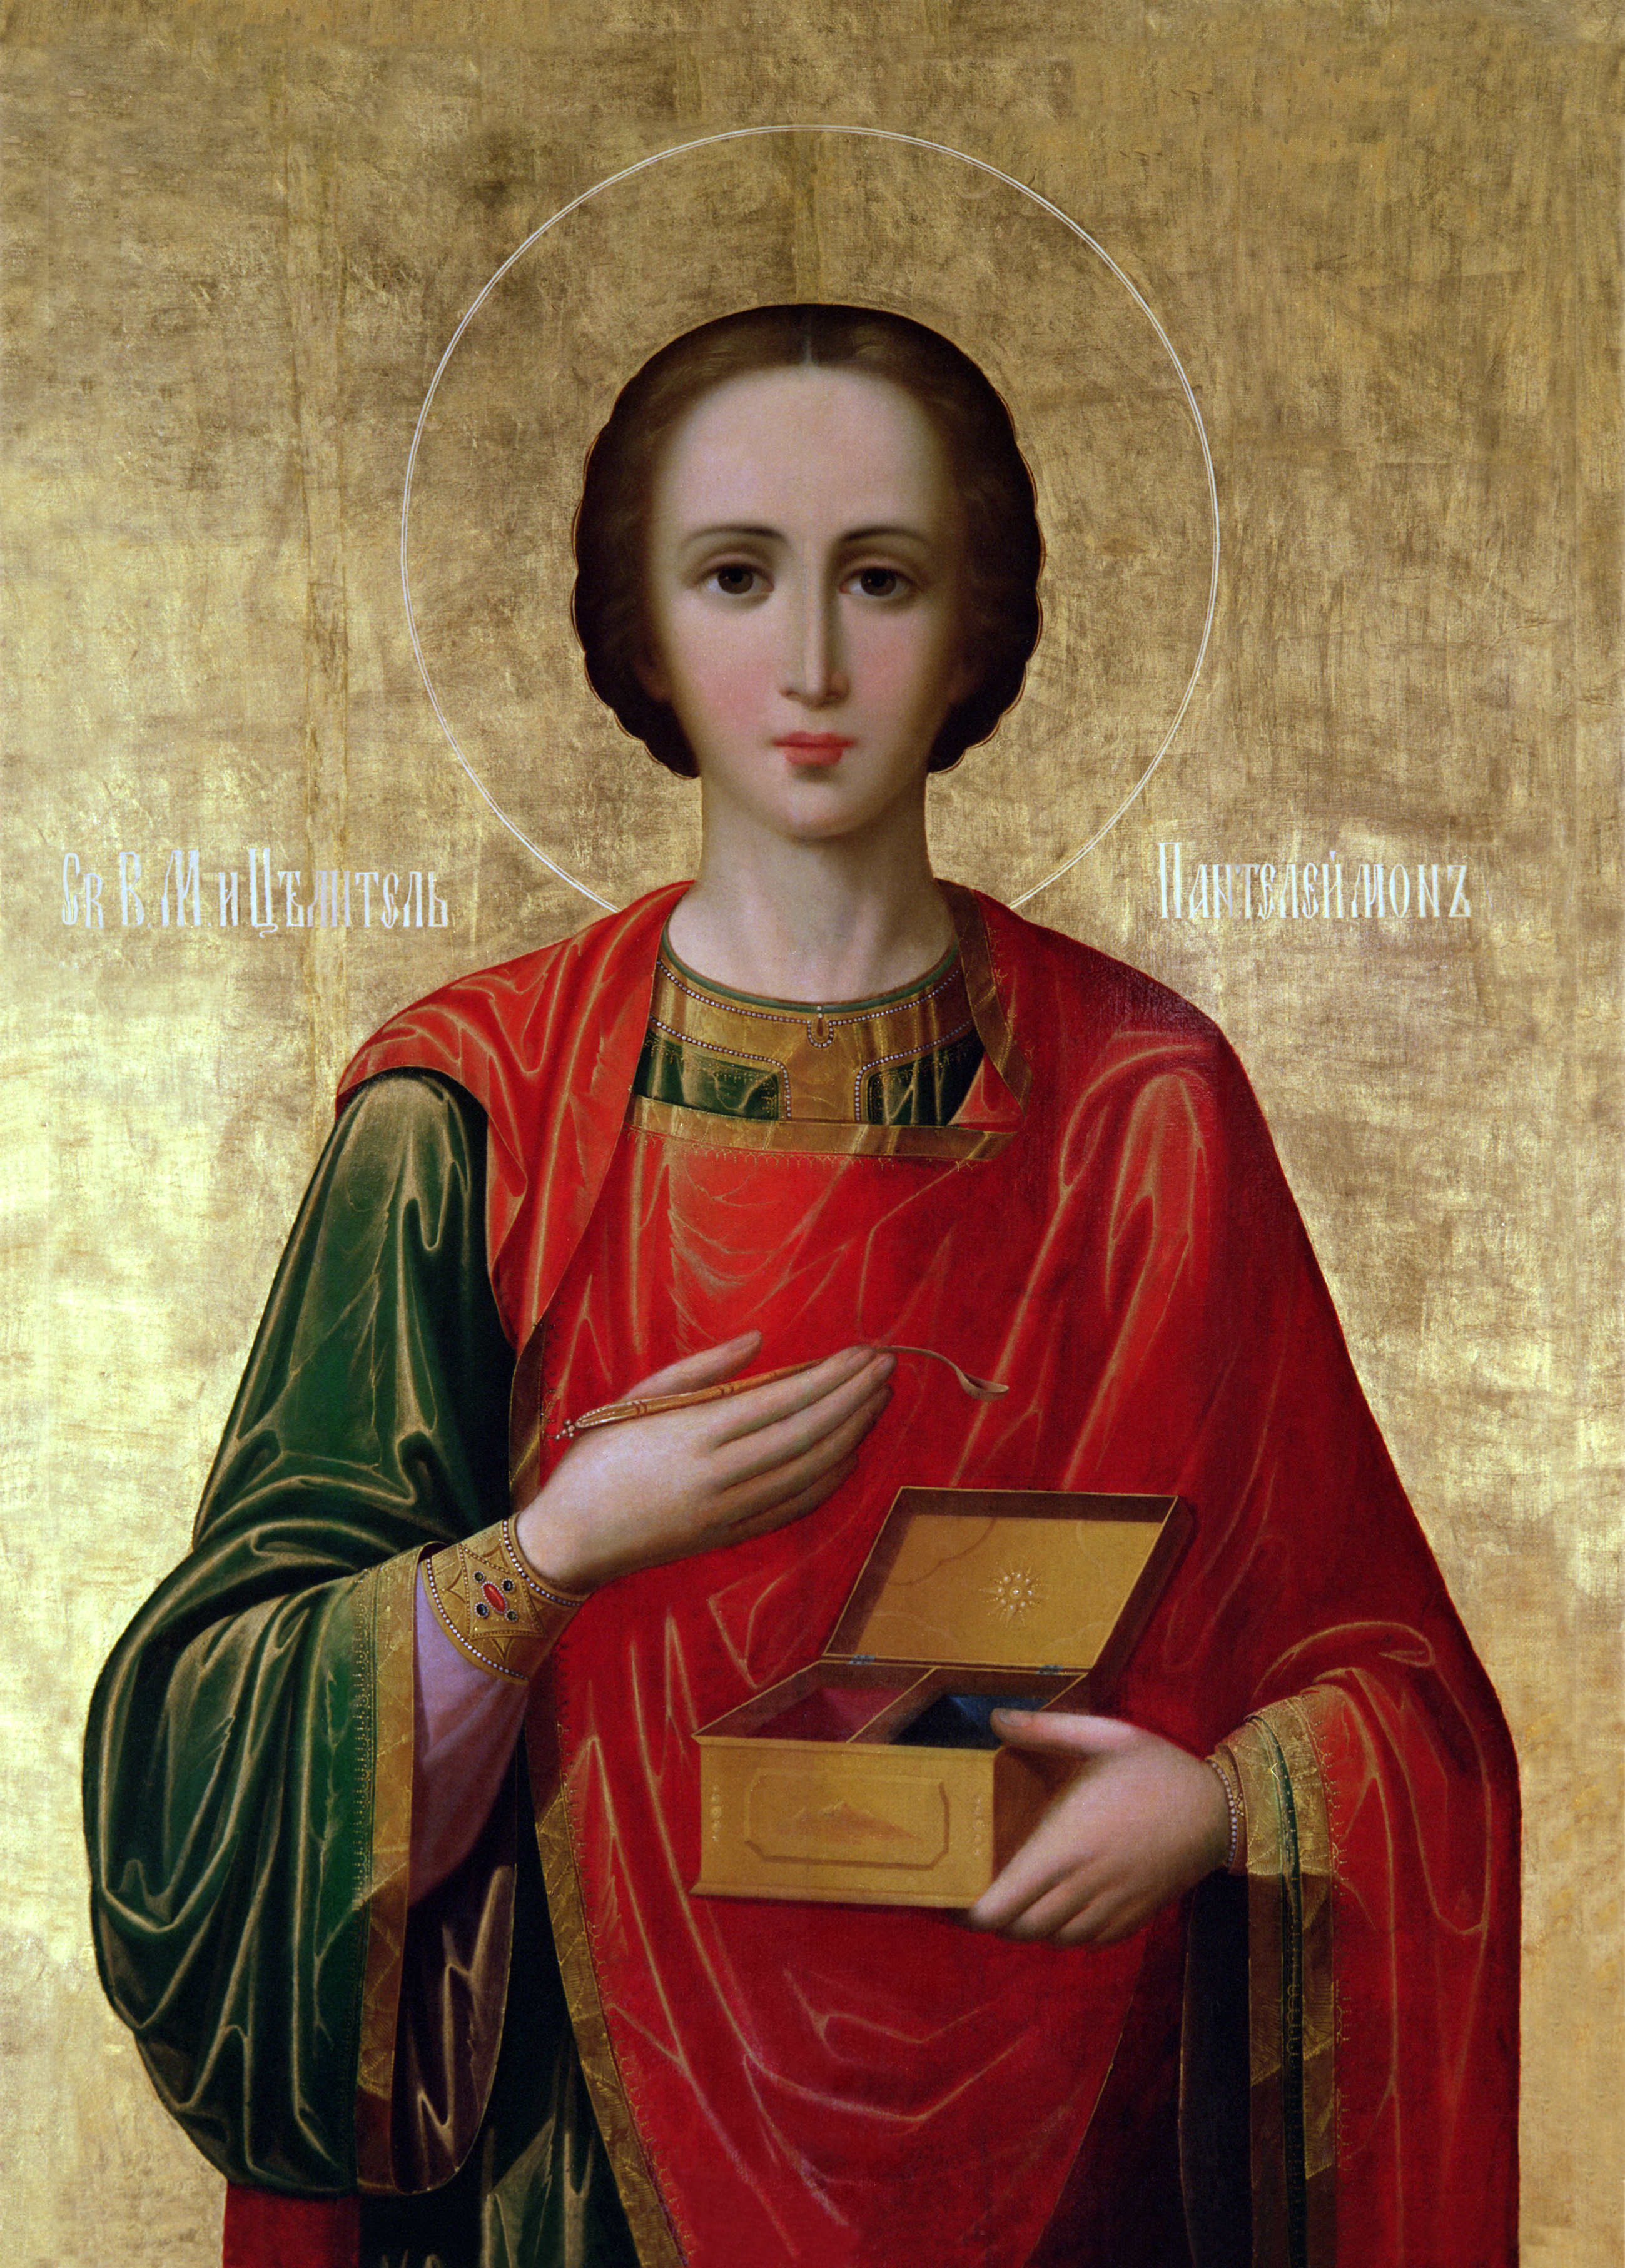 Праздник великомученика. Икона Святого Пантелеймона целителя.